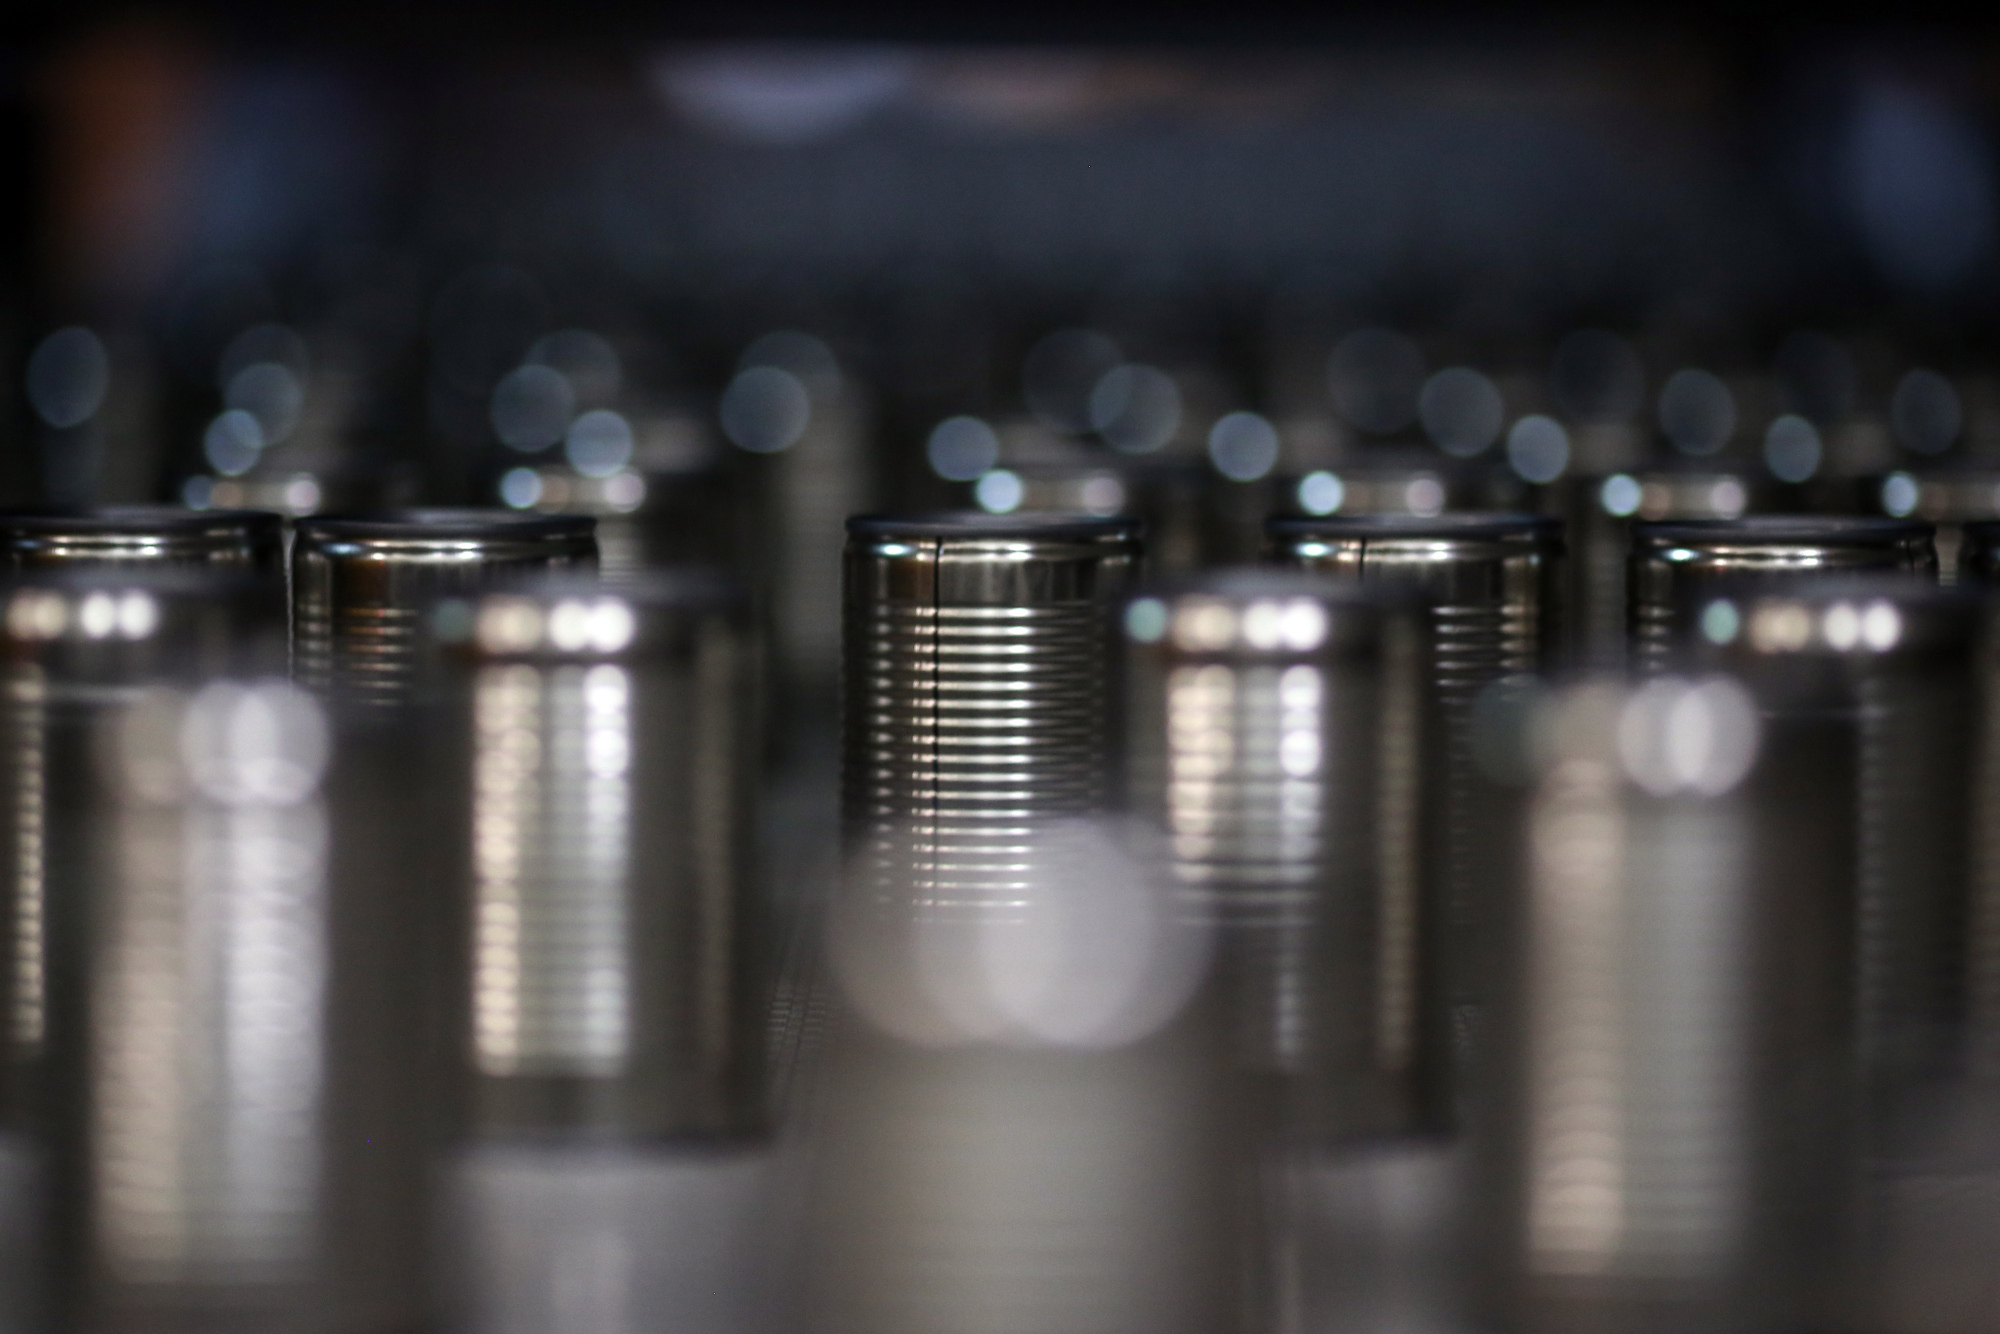 Tin cans&nbsp;move along a conveyor on a production line.